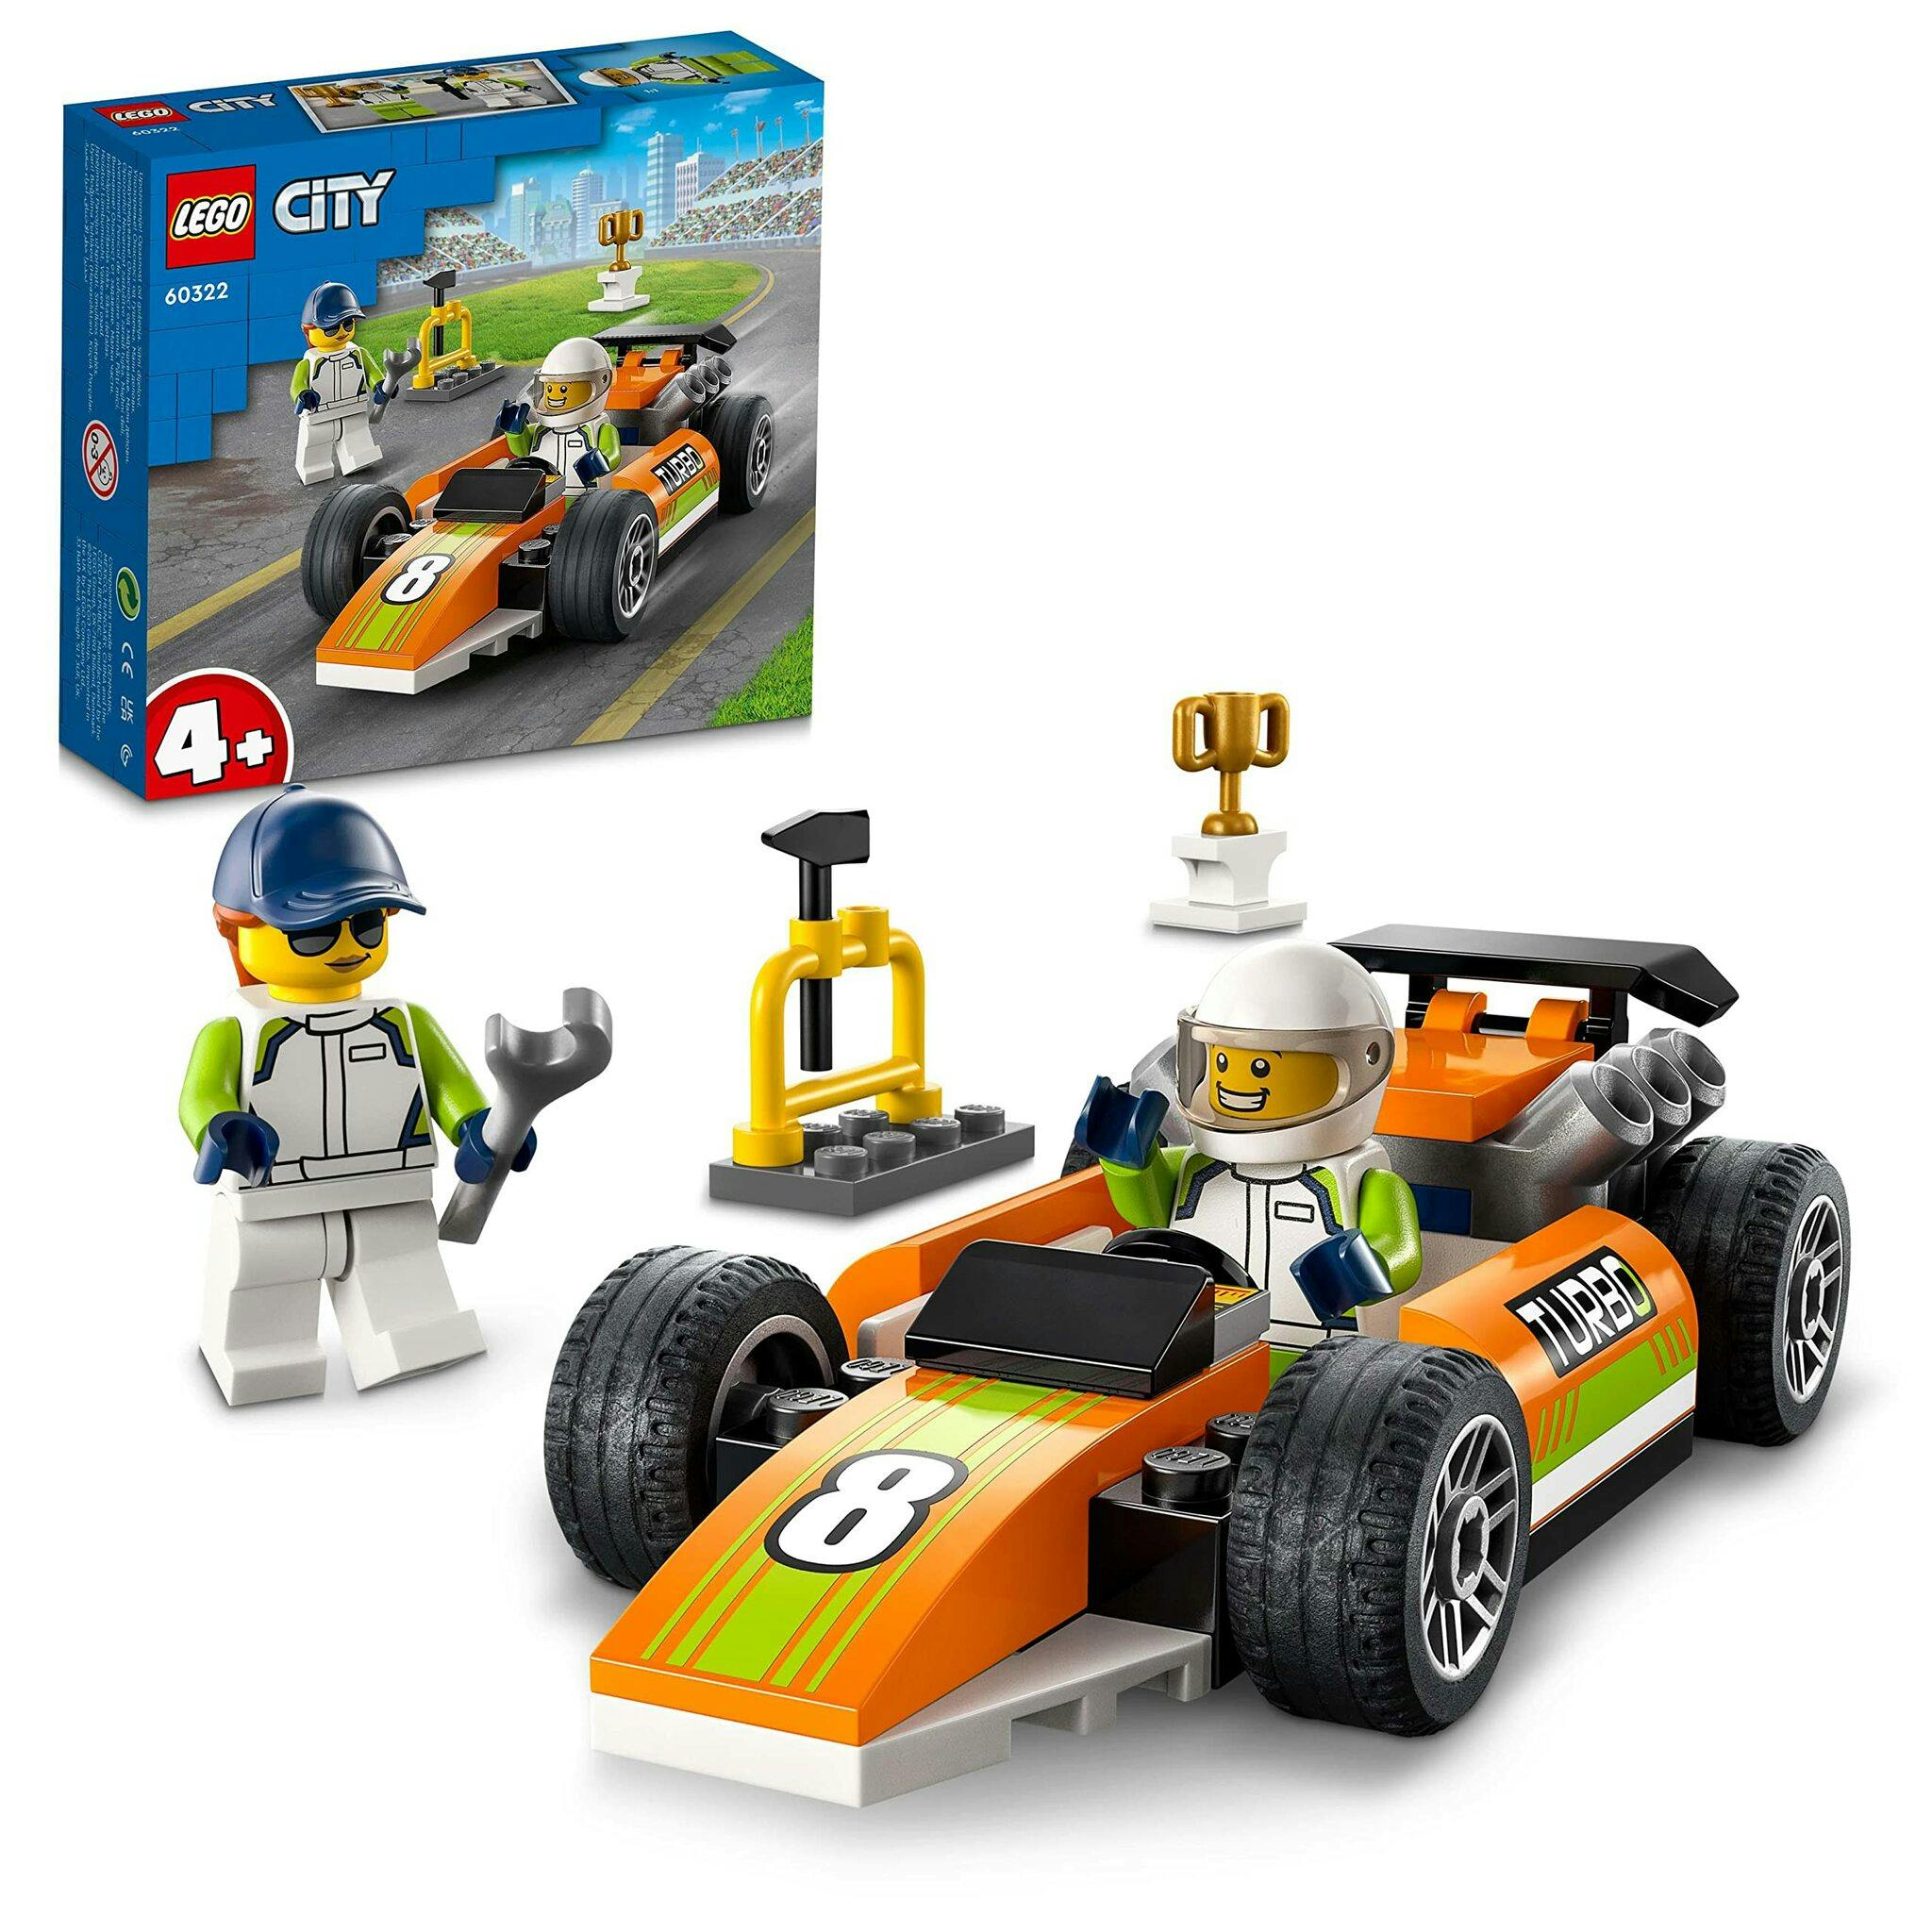 LEGO City Great Vehicles Racerbil, 60322 - På LeksakerPlus.se - hittar du  leksaker till alla barn små som stora.